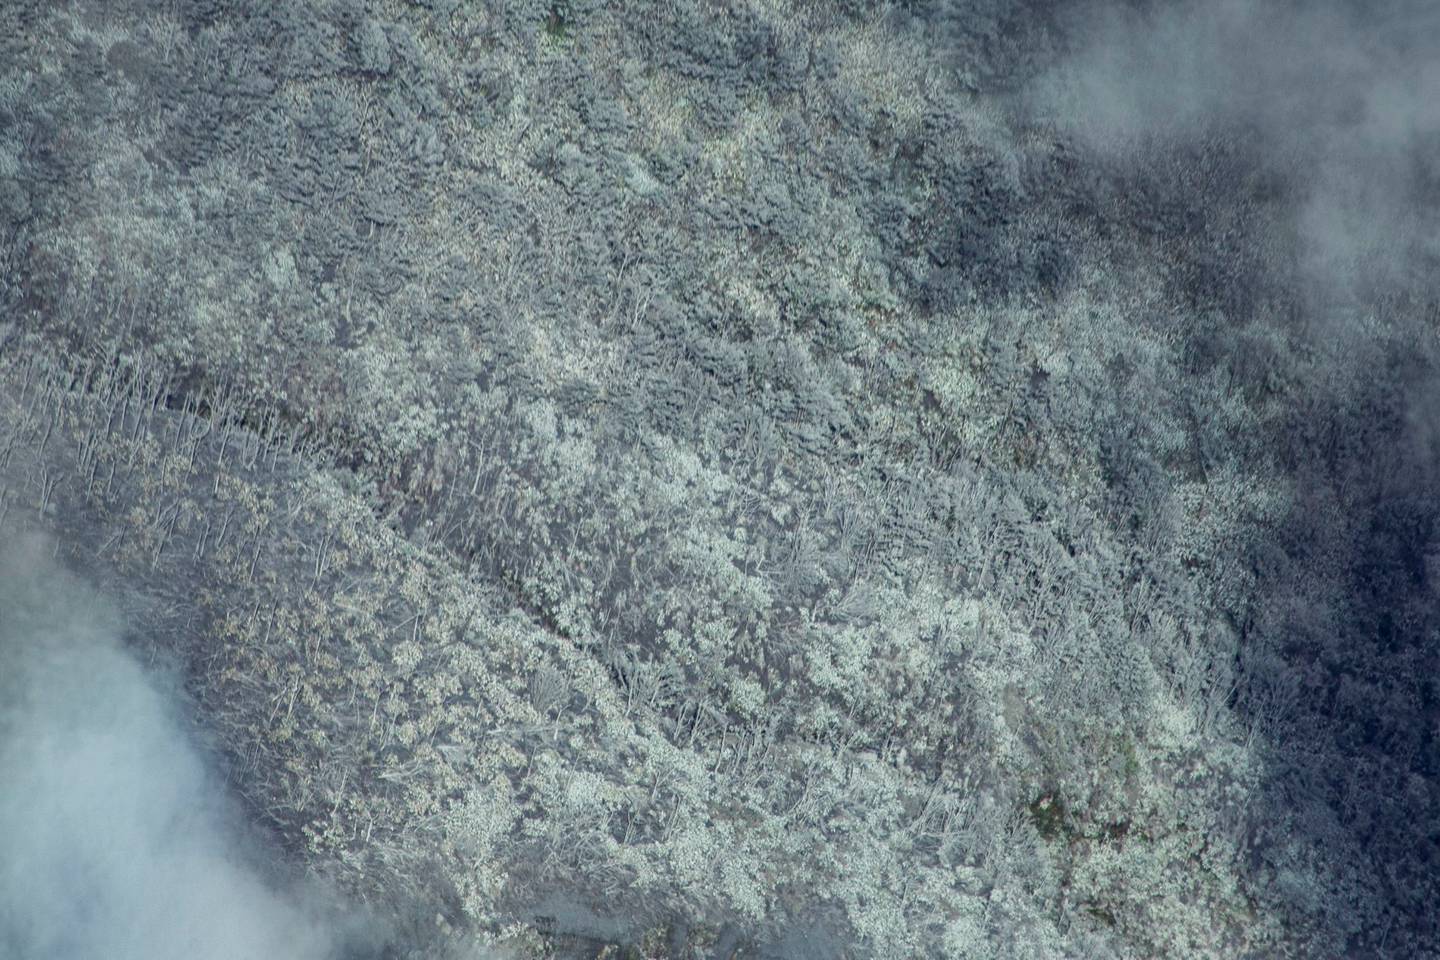 Un sobrevuelo este viernes permitió ver el baño de material ácido que quedó sobre la vegetación cercana al cráter del Rincón de la Vieja. Foto: Paulo Ruiz.